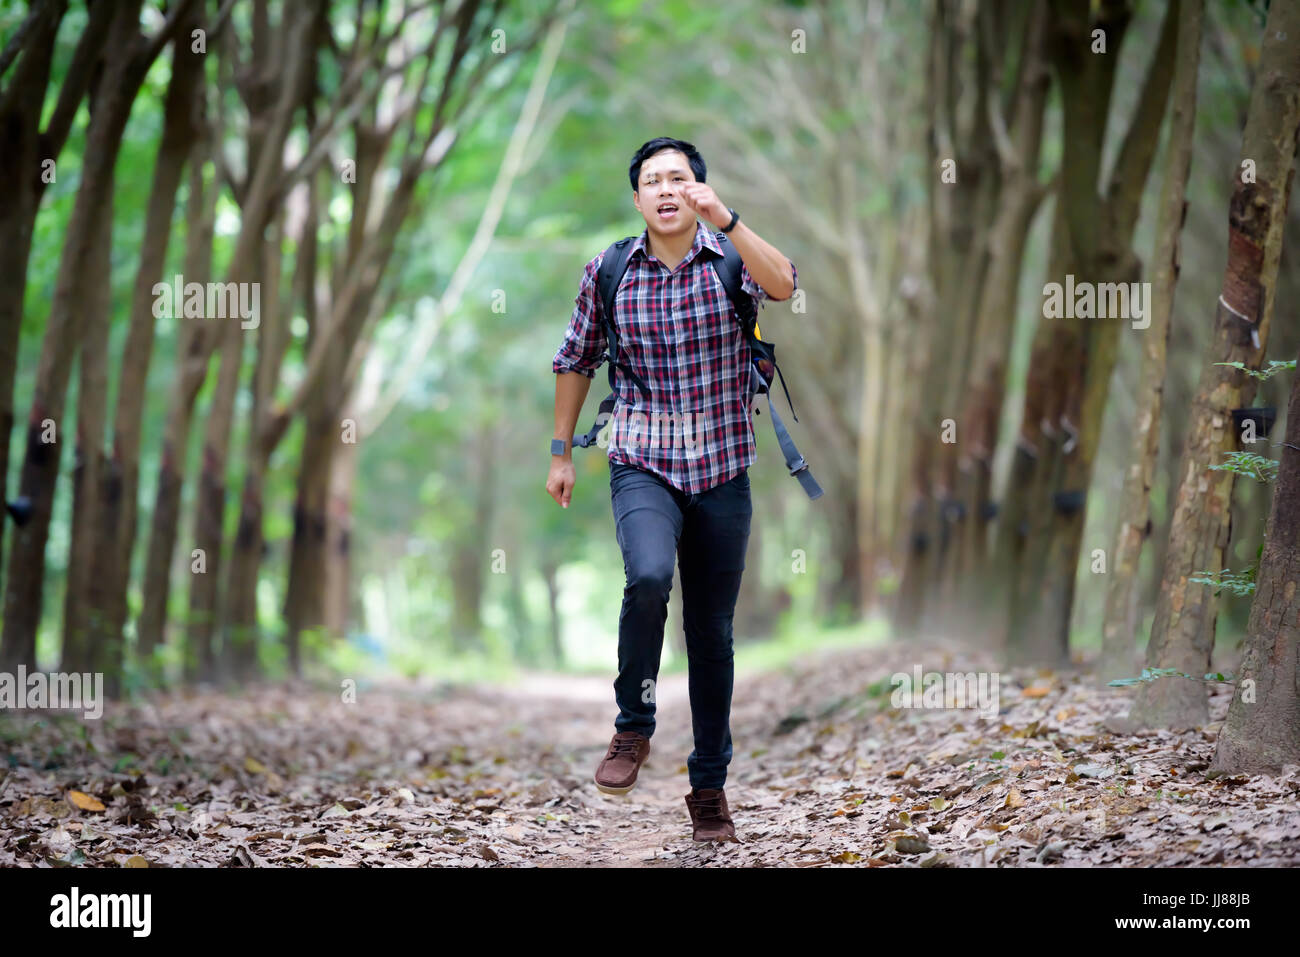 Glücklich asiatischer Mann Rucksack im Kautschuk-Plantage Hintergrund laufen. Reise und Urlaub-Konzept. Stockfoto